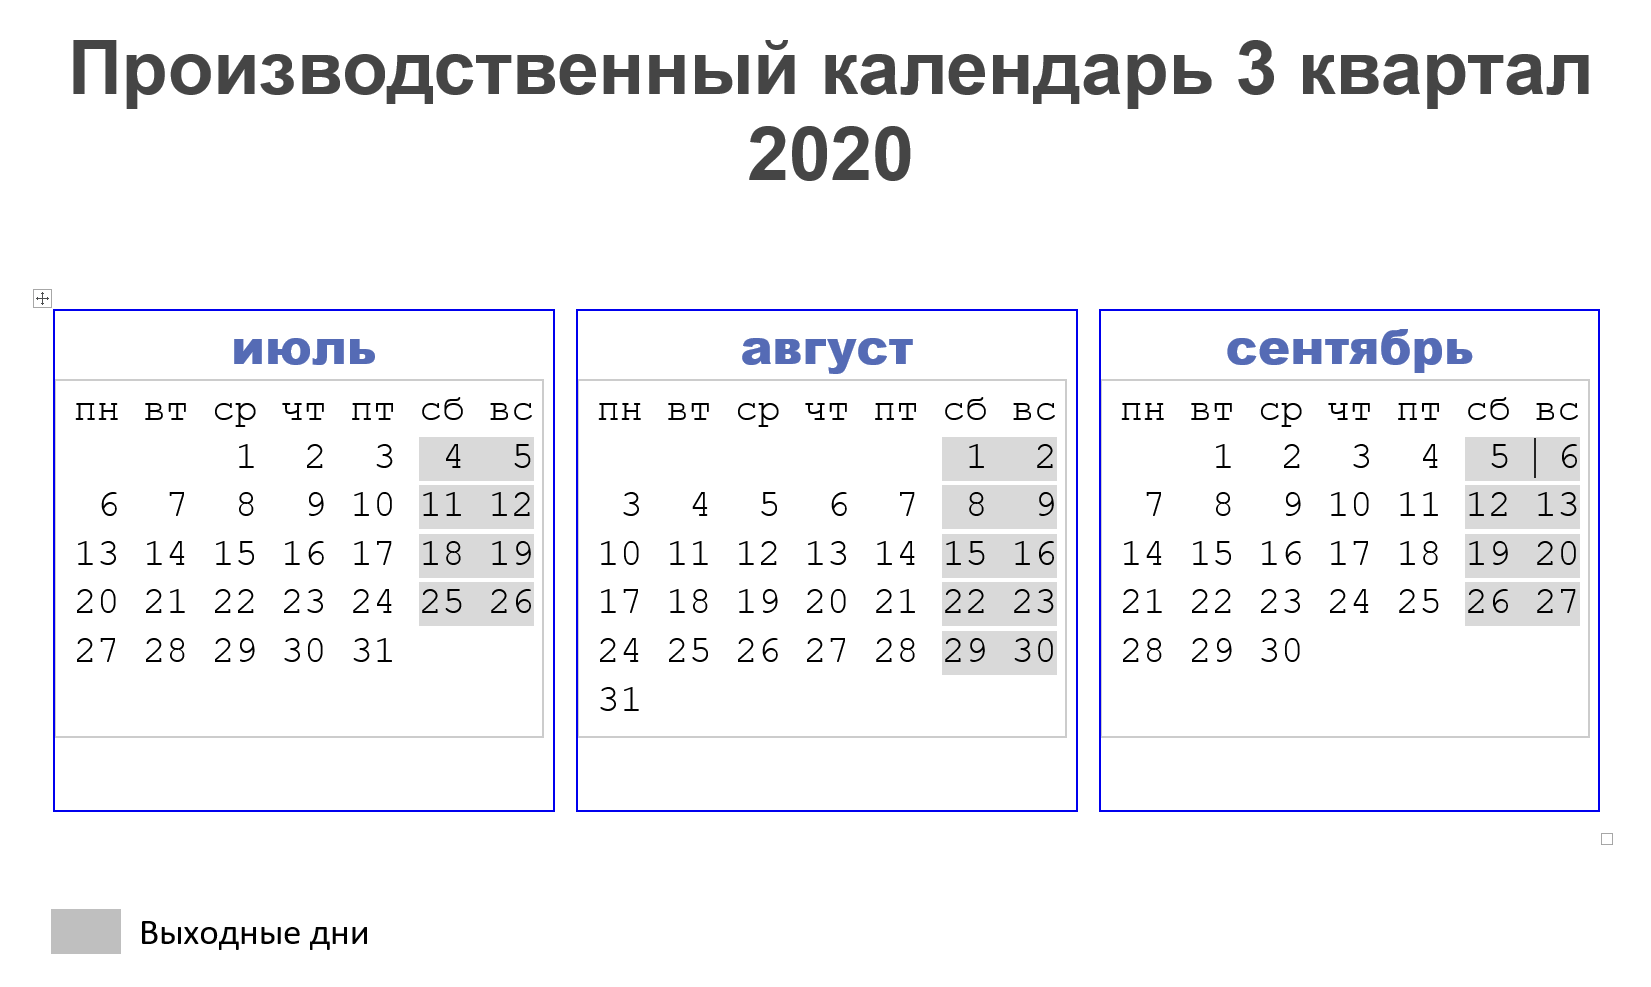 производственный календарь на 3 квартал 2020 года